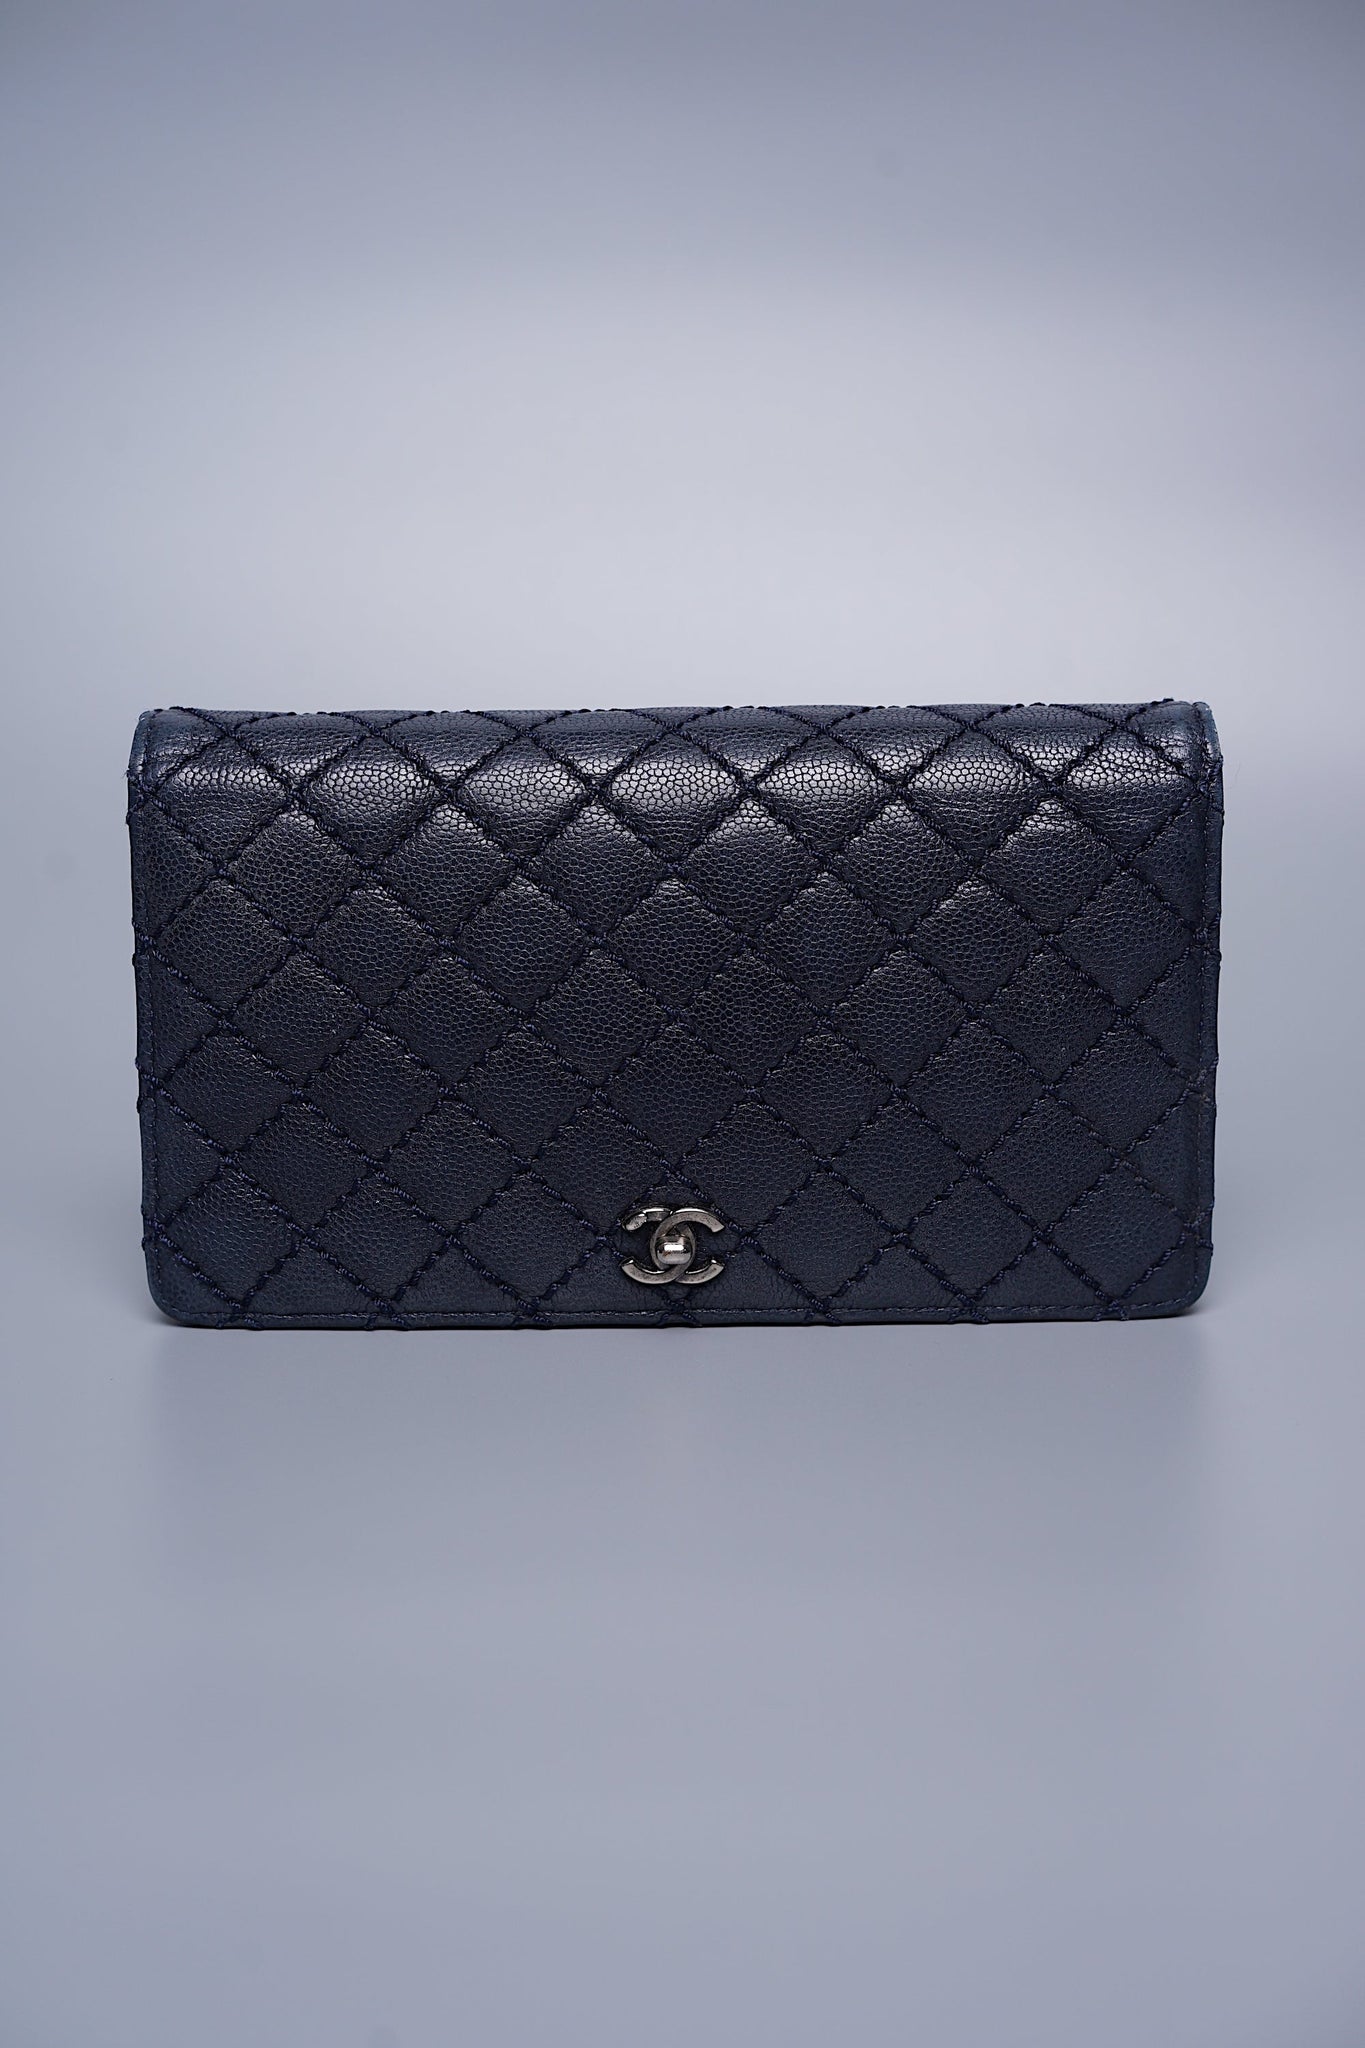 Chanel Long Flap Wallet in Navy Caviar